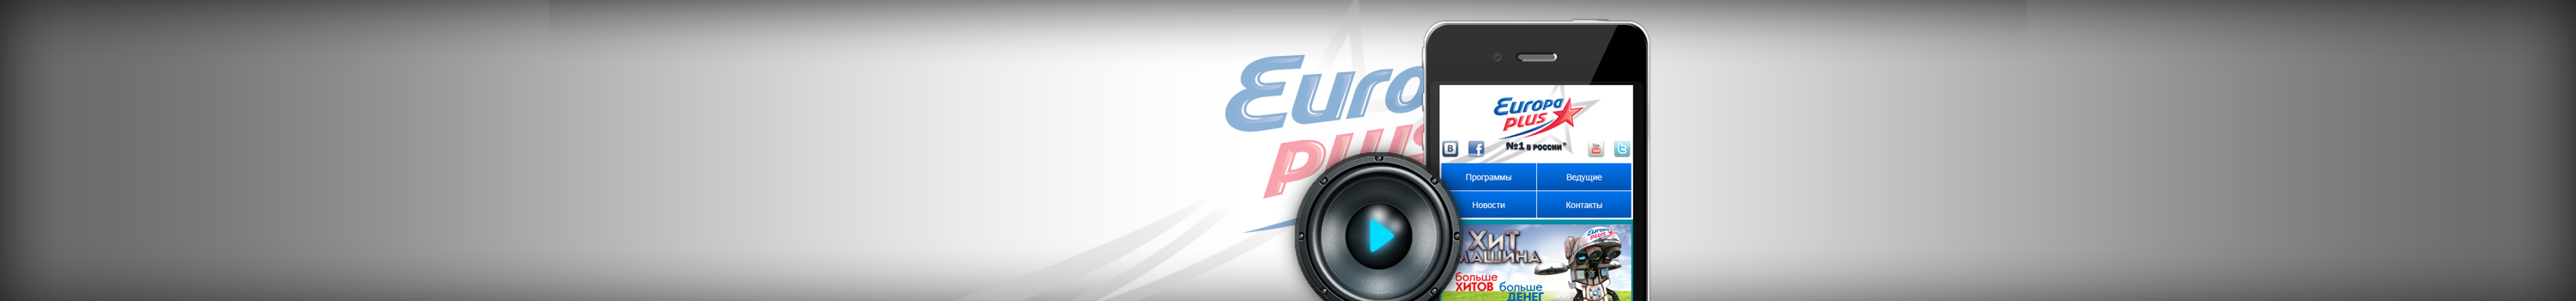 Europa Plus (мобильная версия)